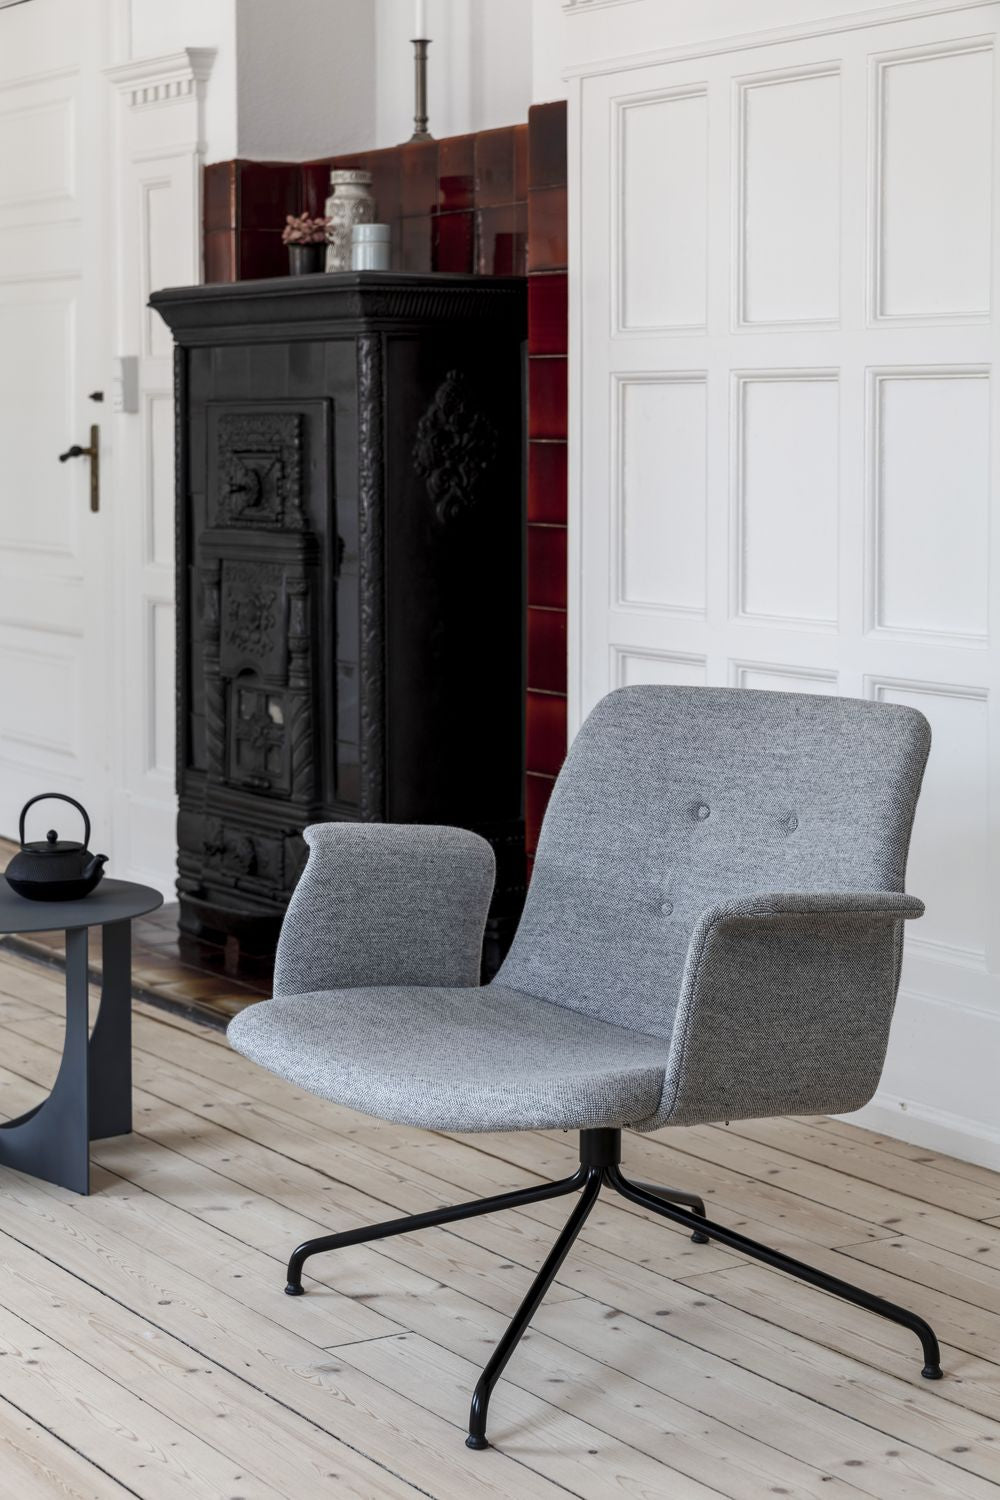 Bent Hansen Primum Lounge Chaise sans accoudoirs, cadres en acier inoxydable / cuir Adrian Cognac